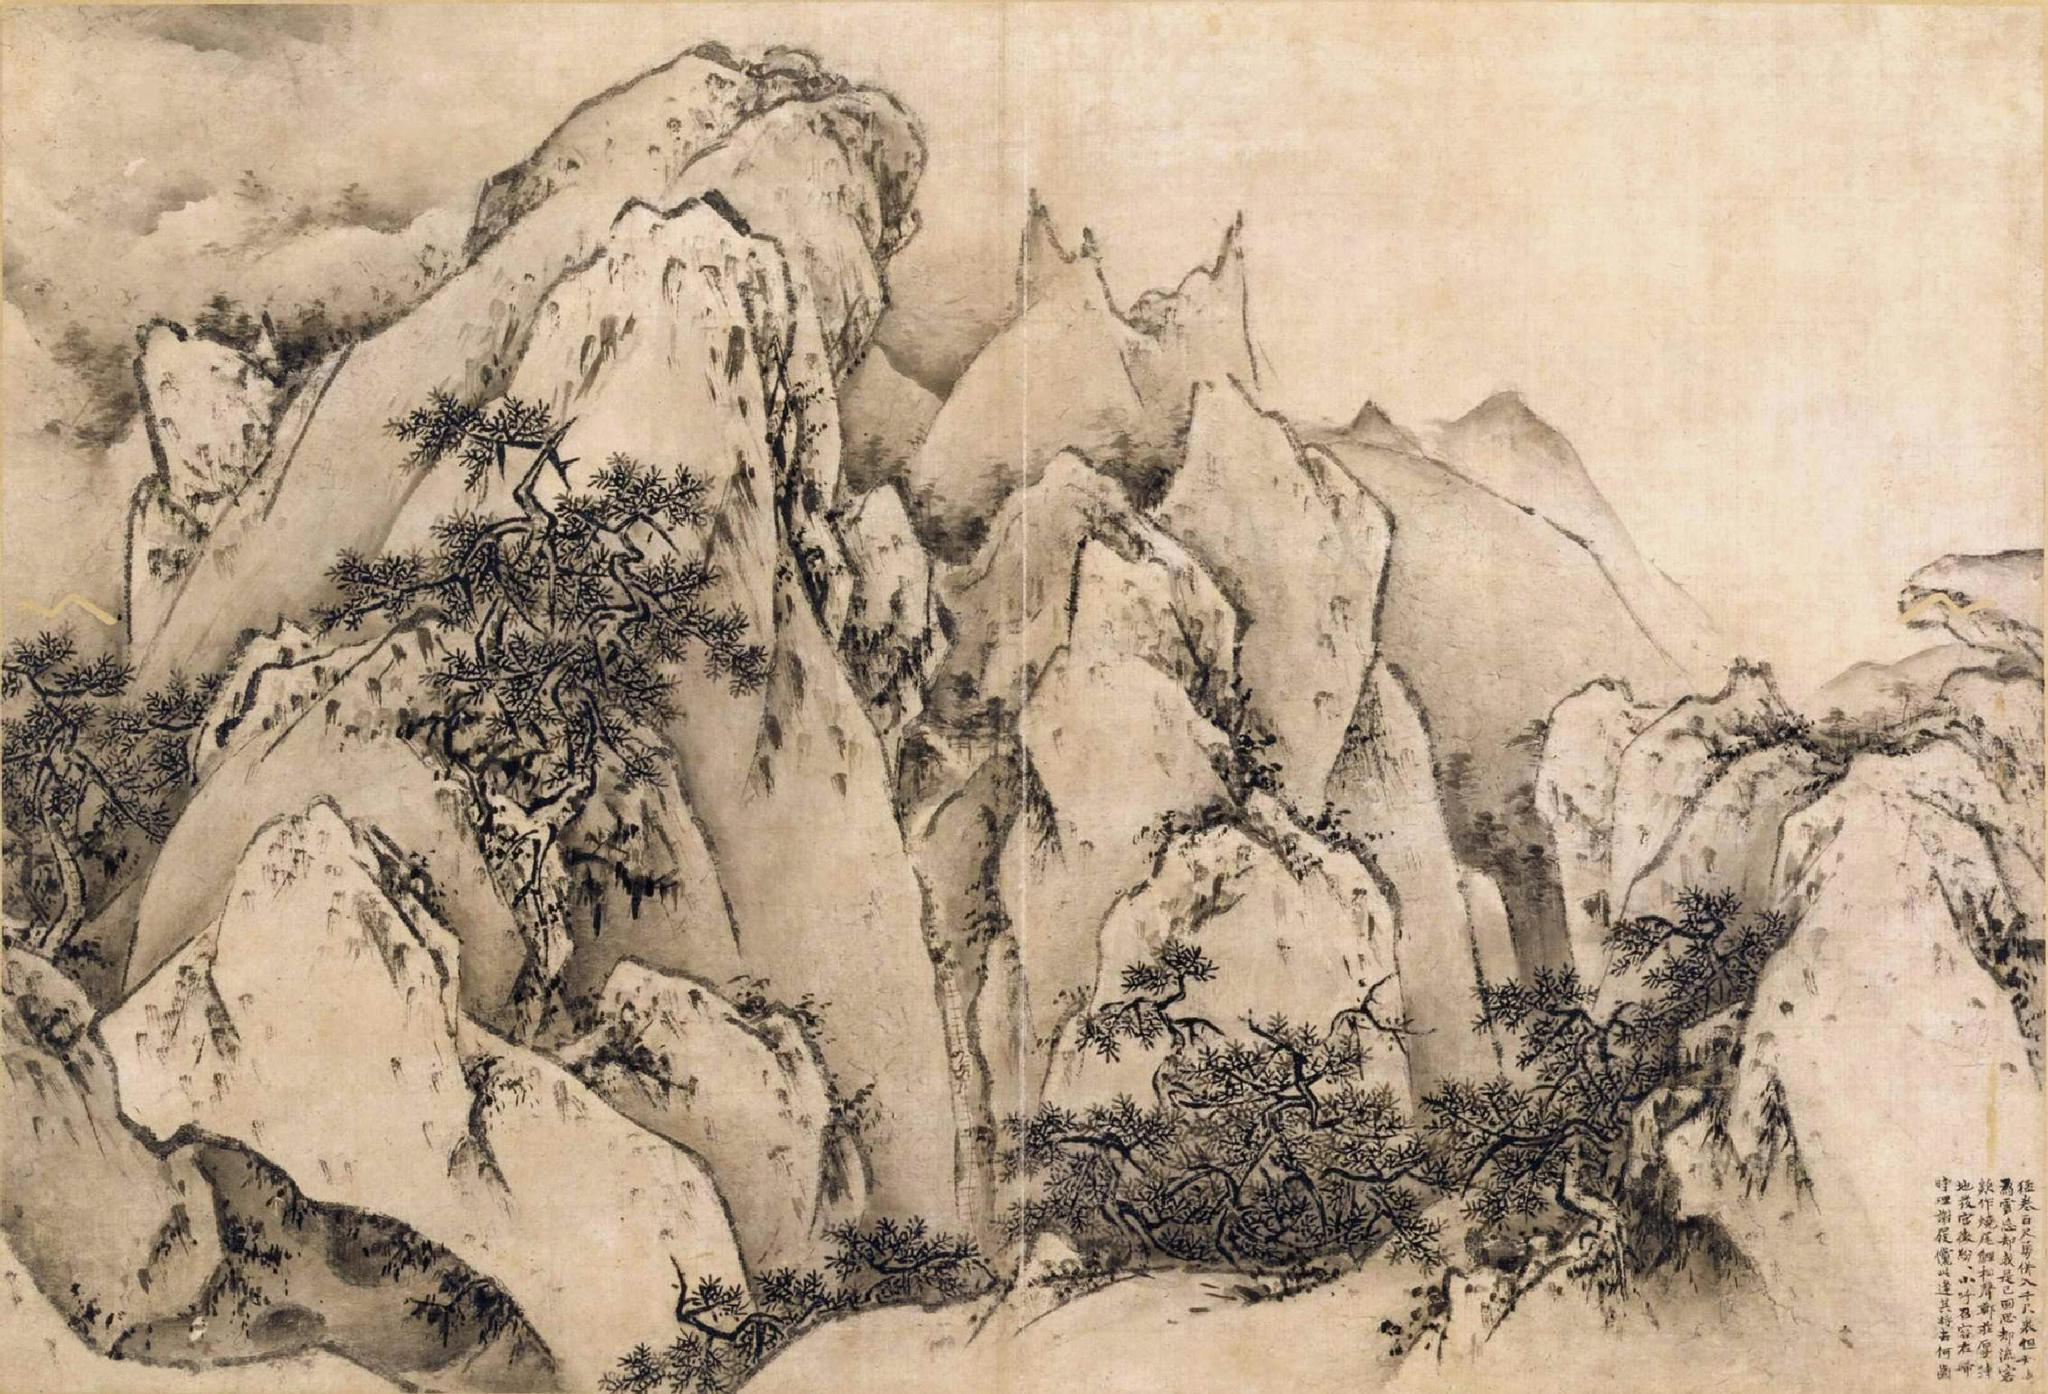 洞天寻隐·学林纪丨胜景纪游:中国古代实景山水画